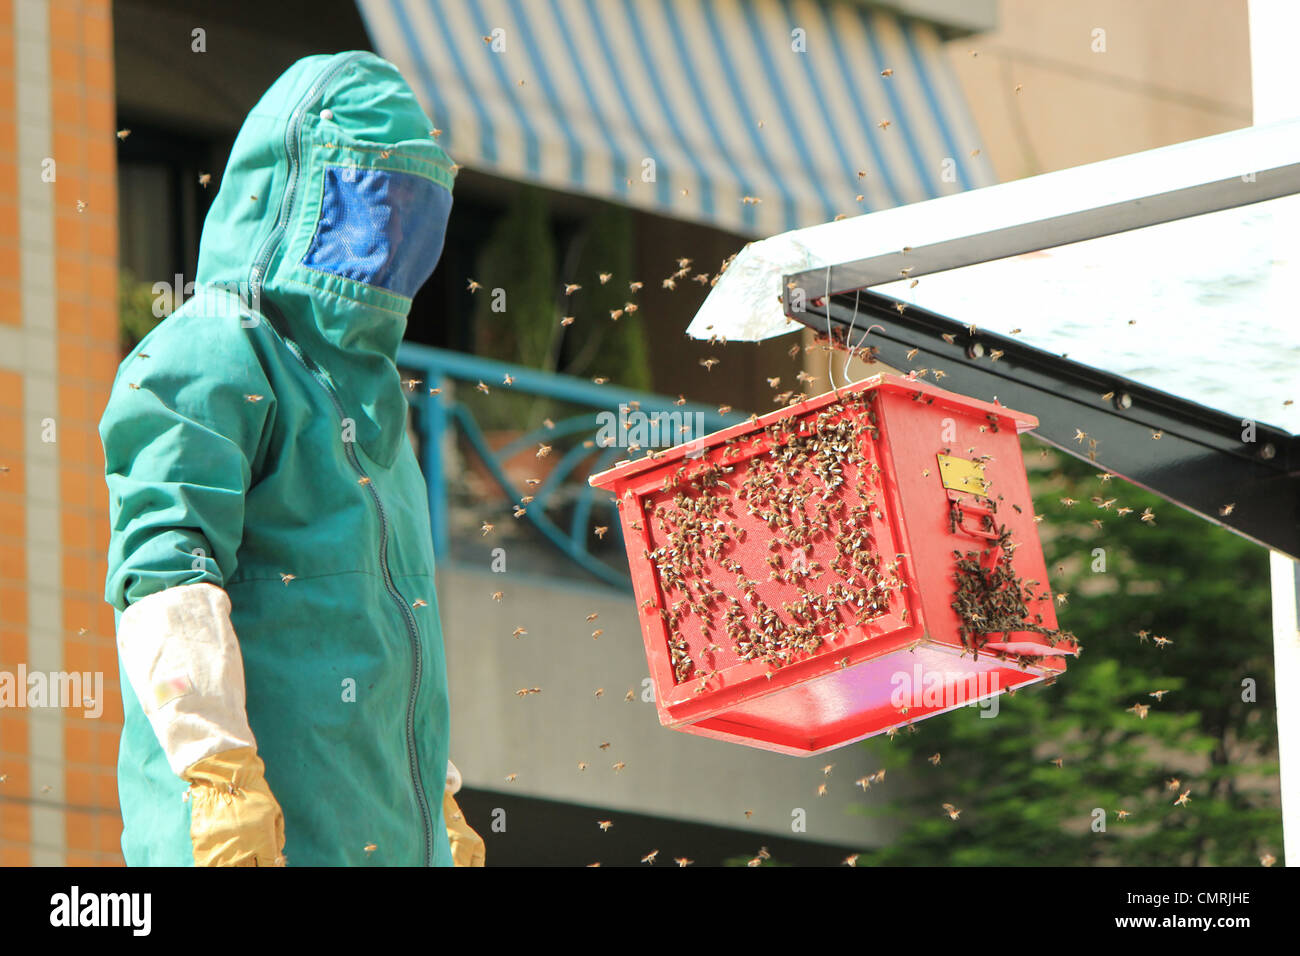 Fireman wearing green vêtements pour protéger des abeilles qu'il essaie d'attirer sur la boîte rouge Banque D'Images